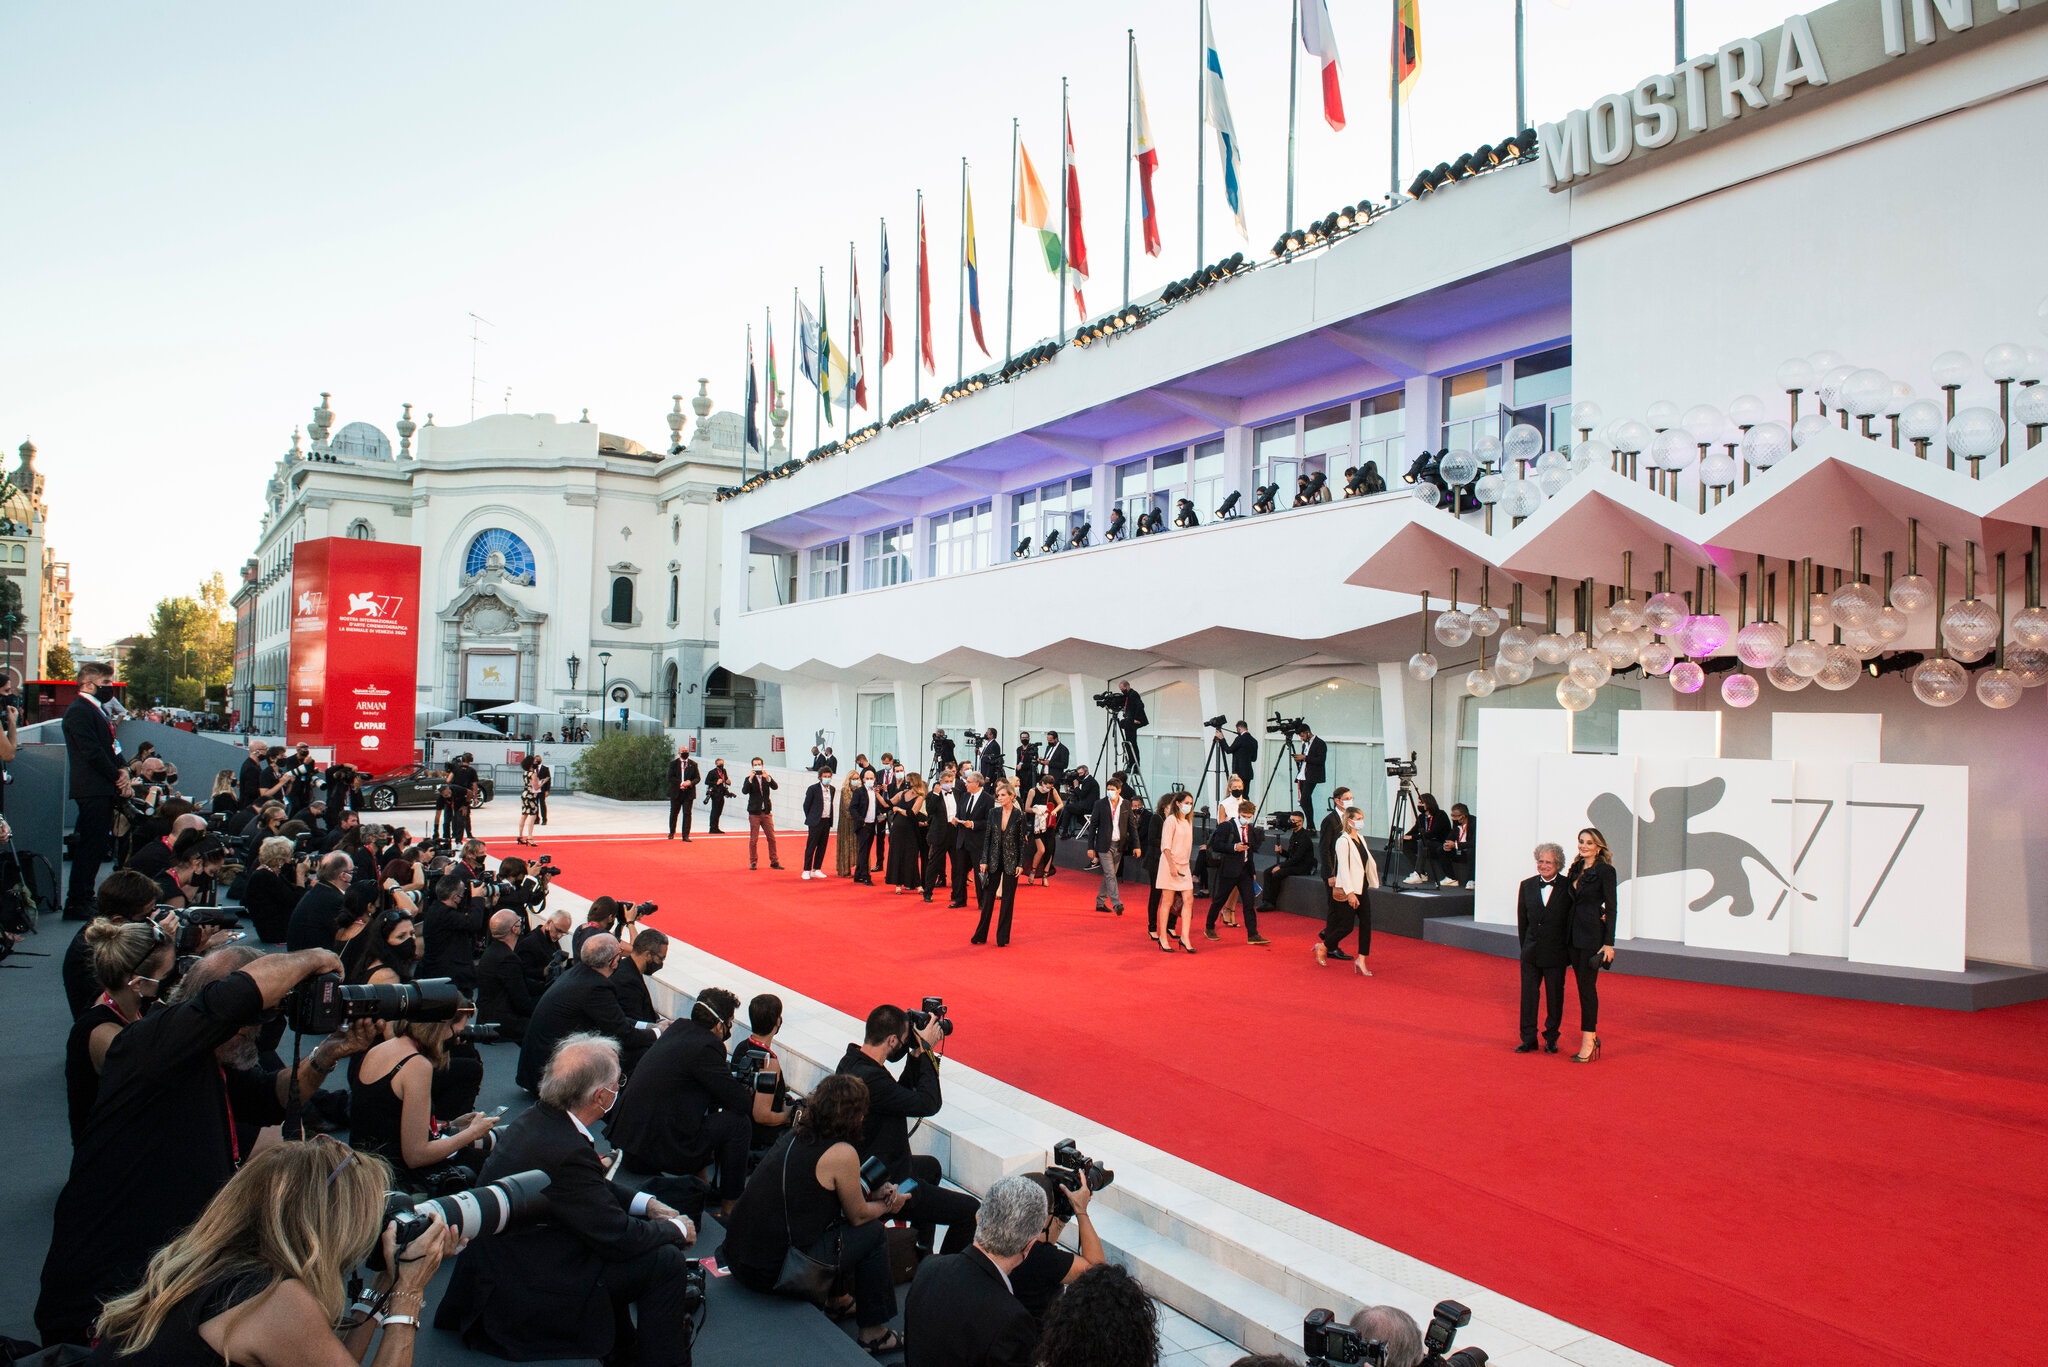 Venice Film Festival 2020: Few films, fewer fans